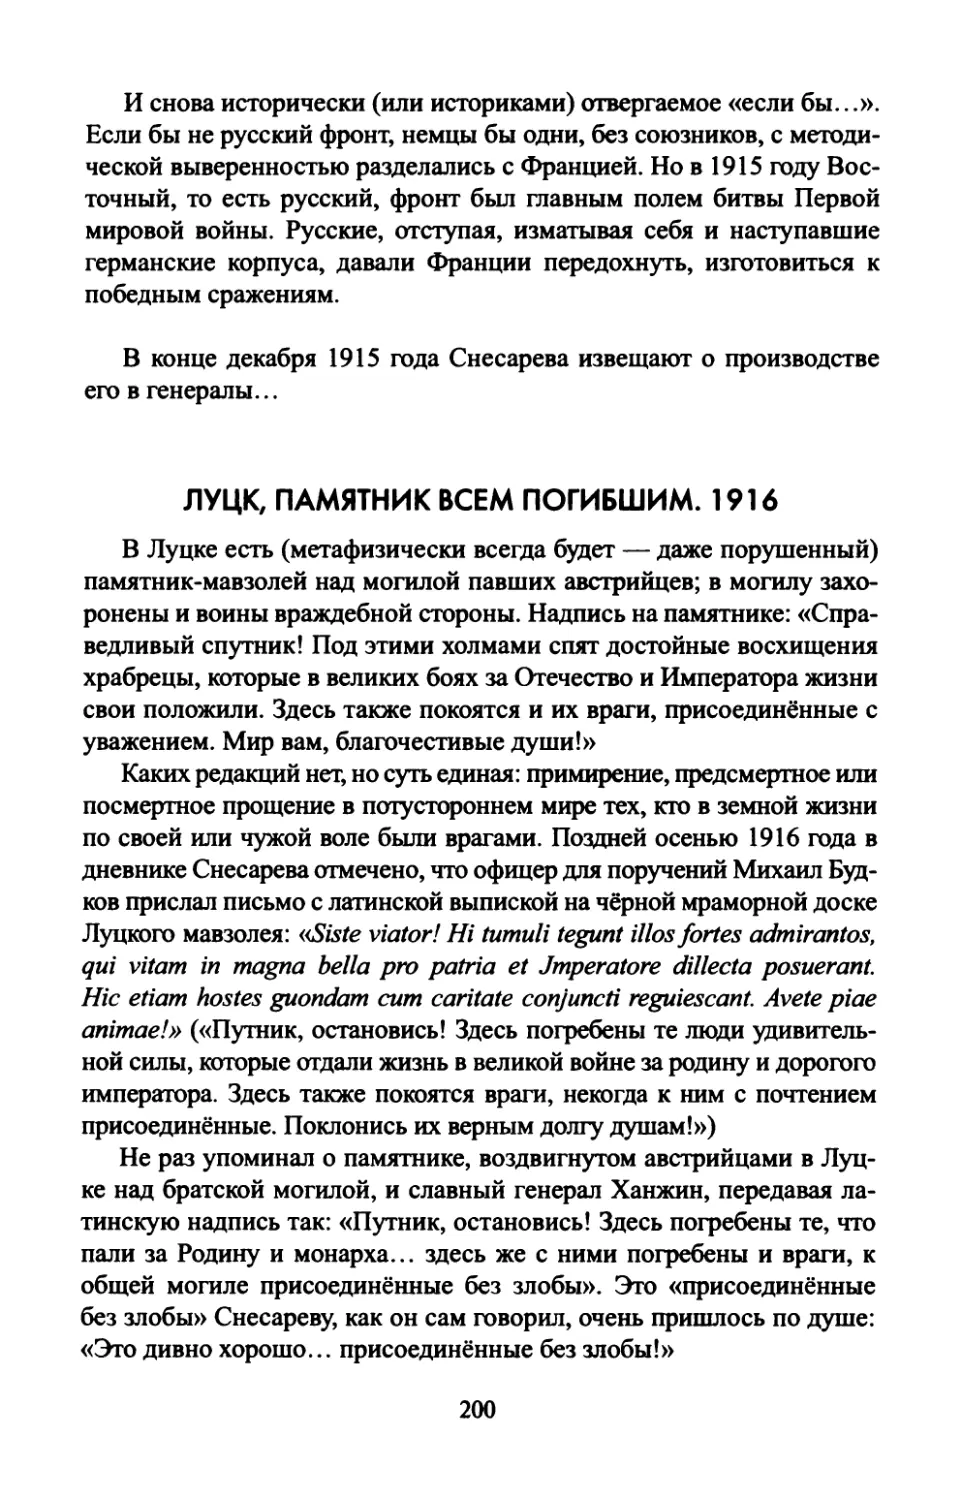 ЛУЦК,  ПАМЯТНИК  ВСЕМ  ПОГИБШИМ.  1916